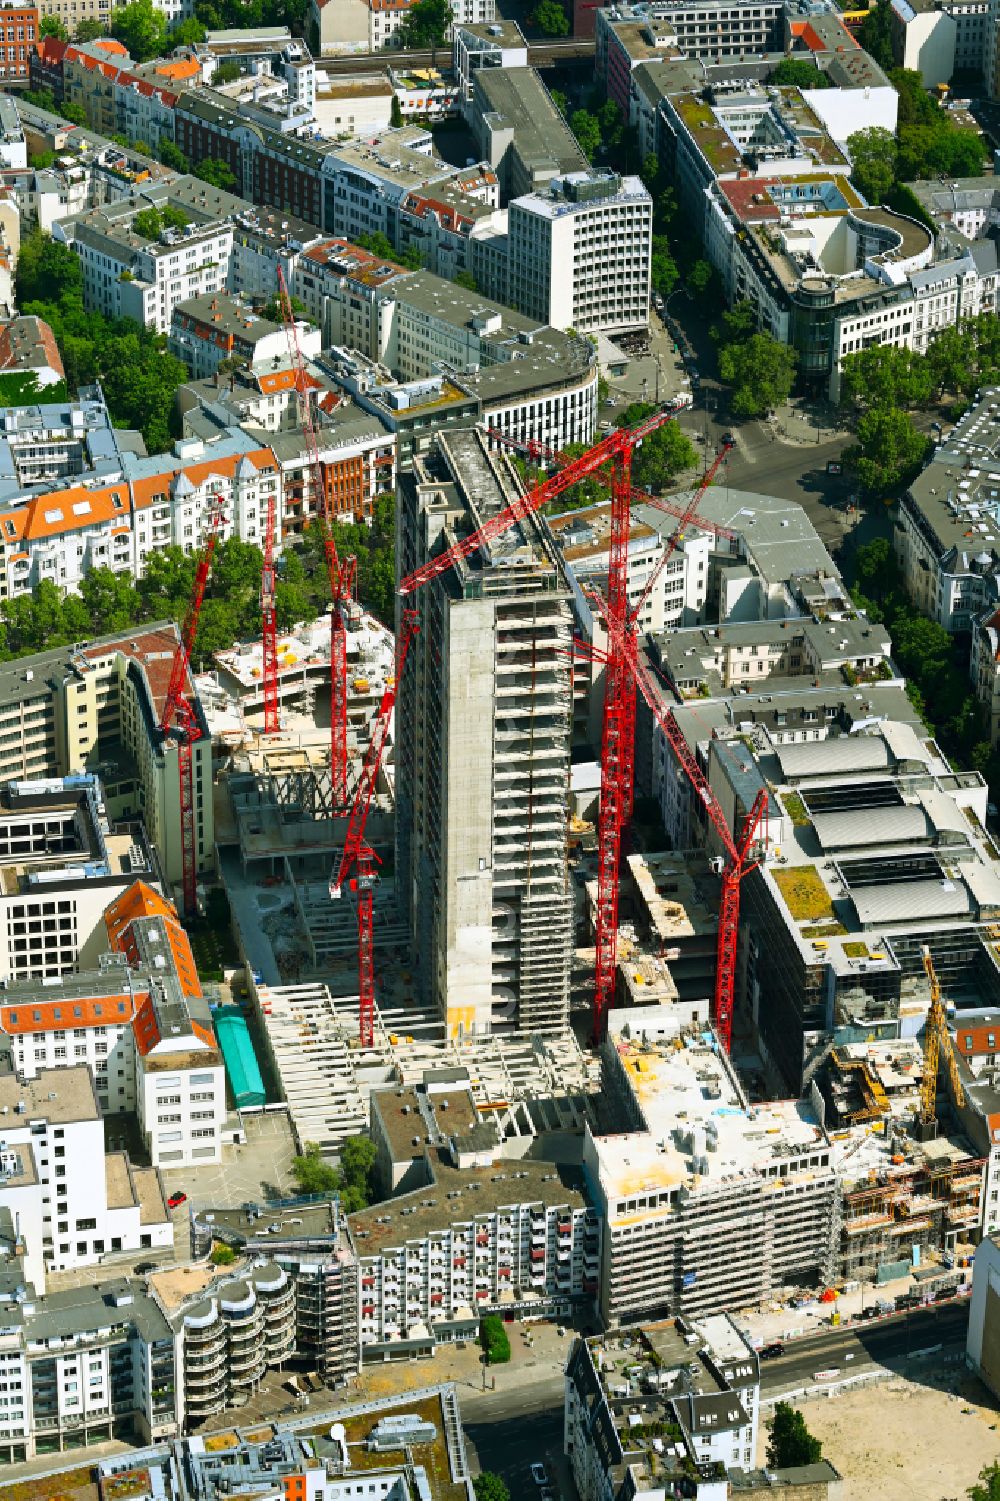 Luftbild Berlin - Umbau eines Büro- und Geschäftshauseskomplexes Fürst im Ortsteil Charlottenburg in Berlin, Deutschland